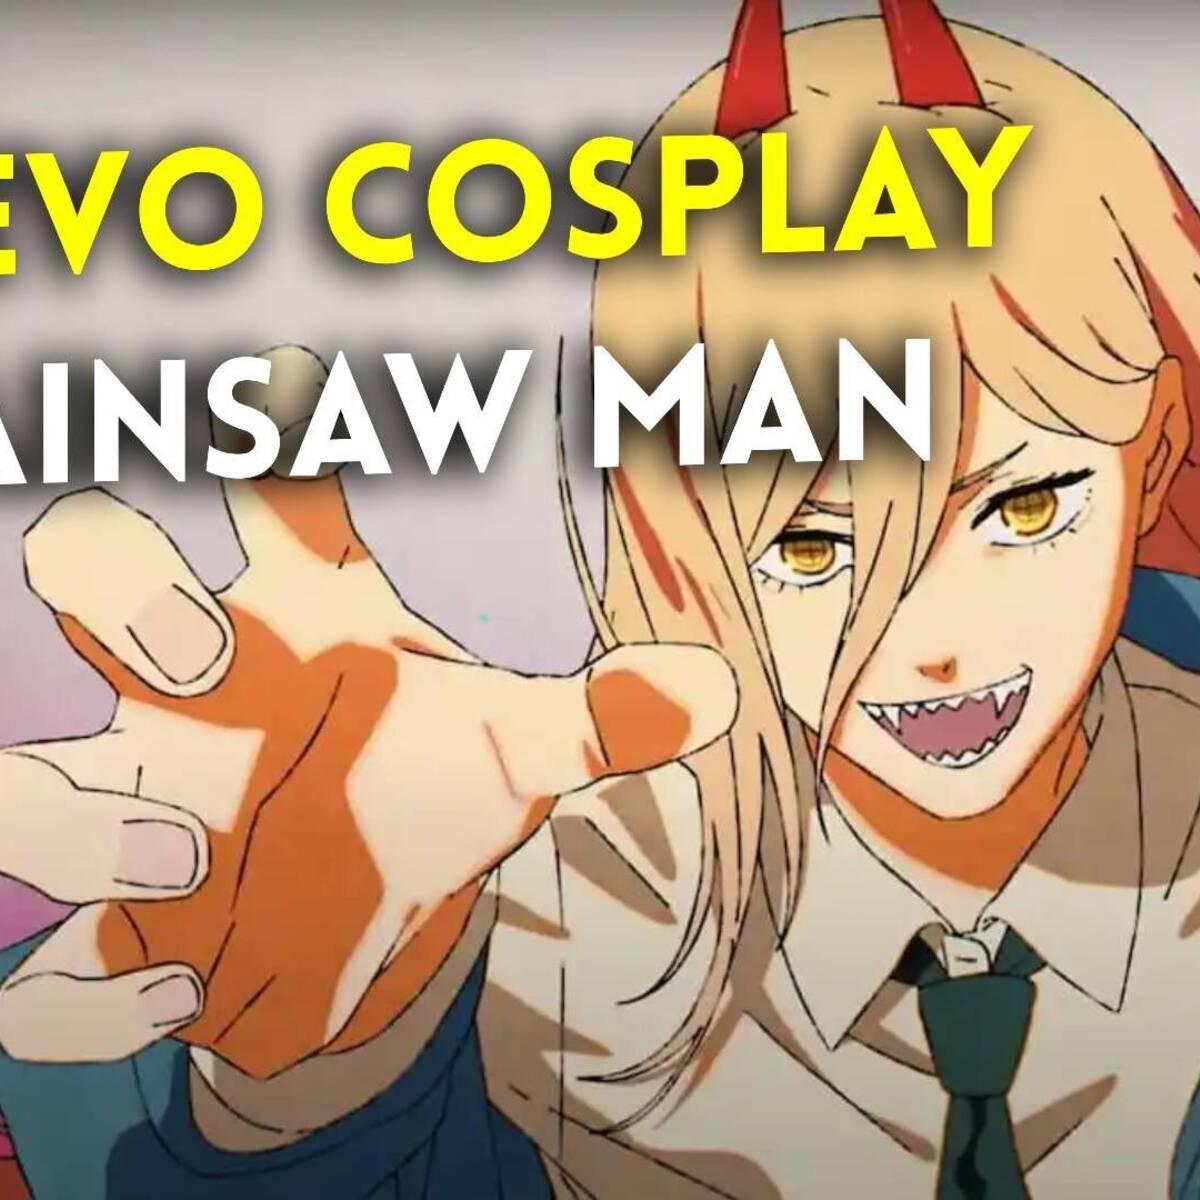 Chainsaw Man: ¿Cuándo termina la primera temporada del anime?